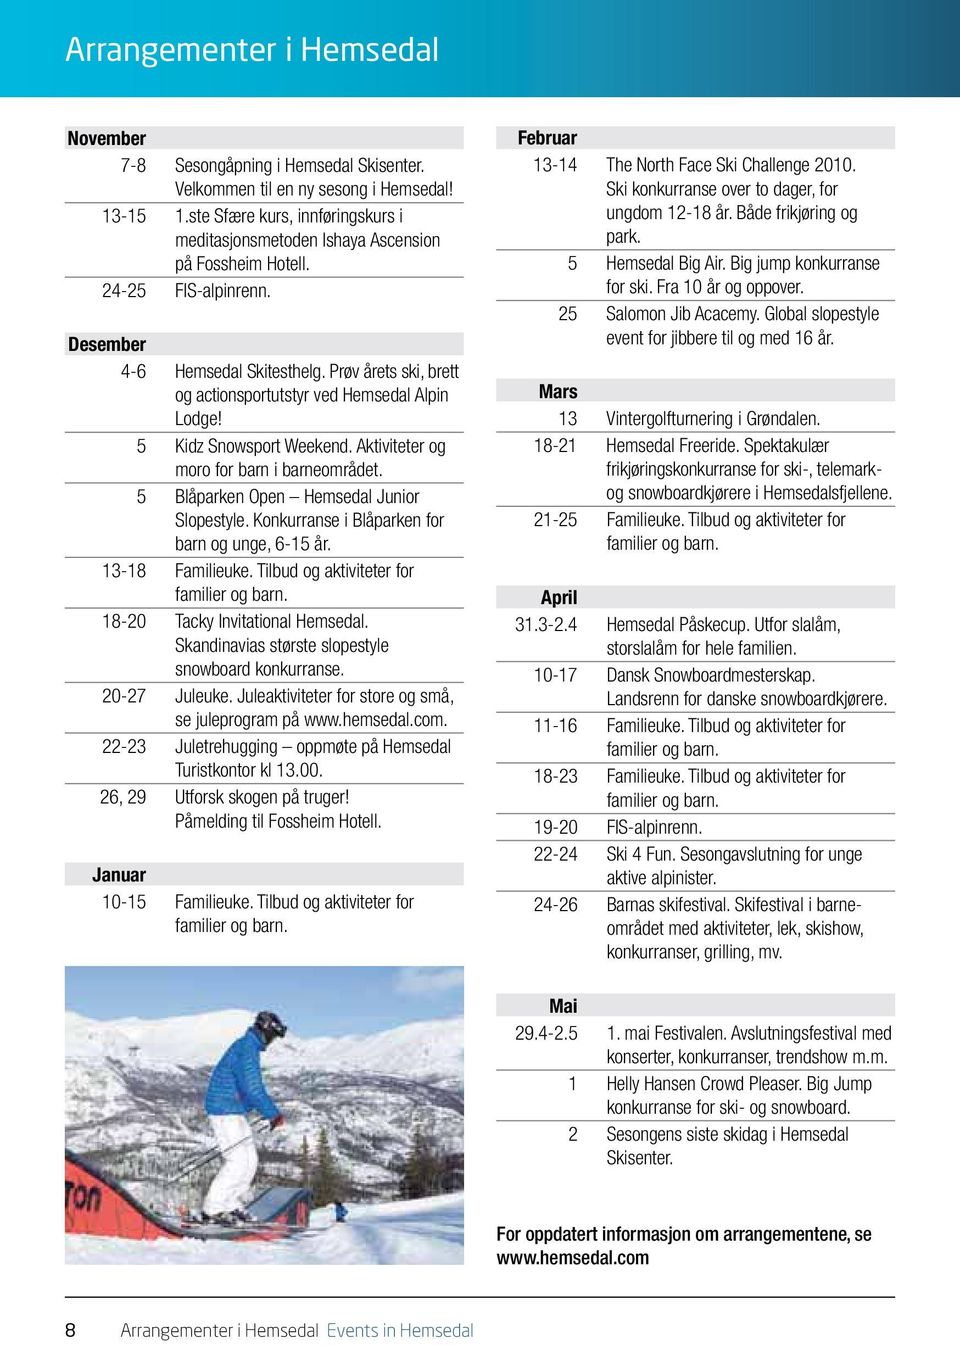 Prøv årets ski, brett og actionsportutstyr ved Hemsedal Alpin Lodge! 5 Kidz Snowsport Weekend. Aktiviteter og moro for barn i barneområdet. 5 Blåparken Open Hemsedal Junior Slopestyle.